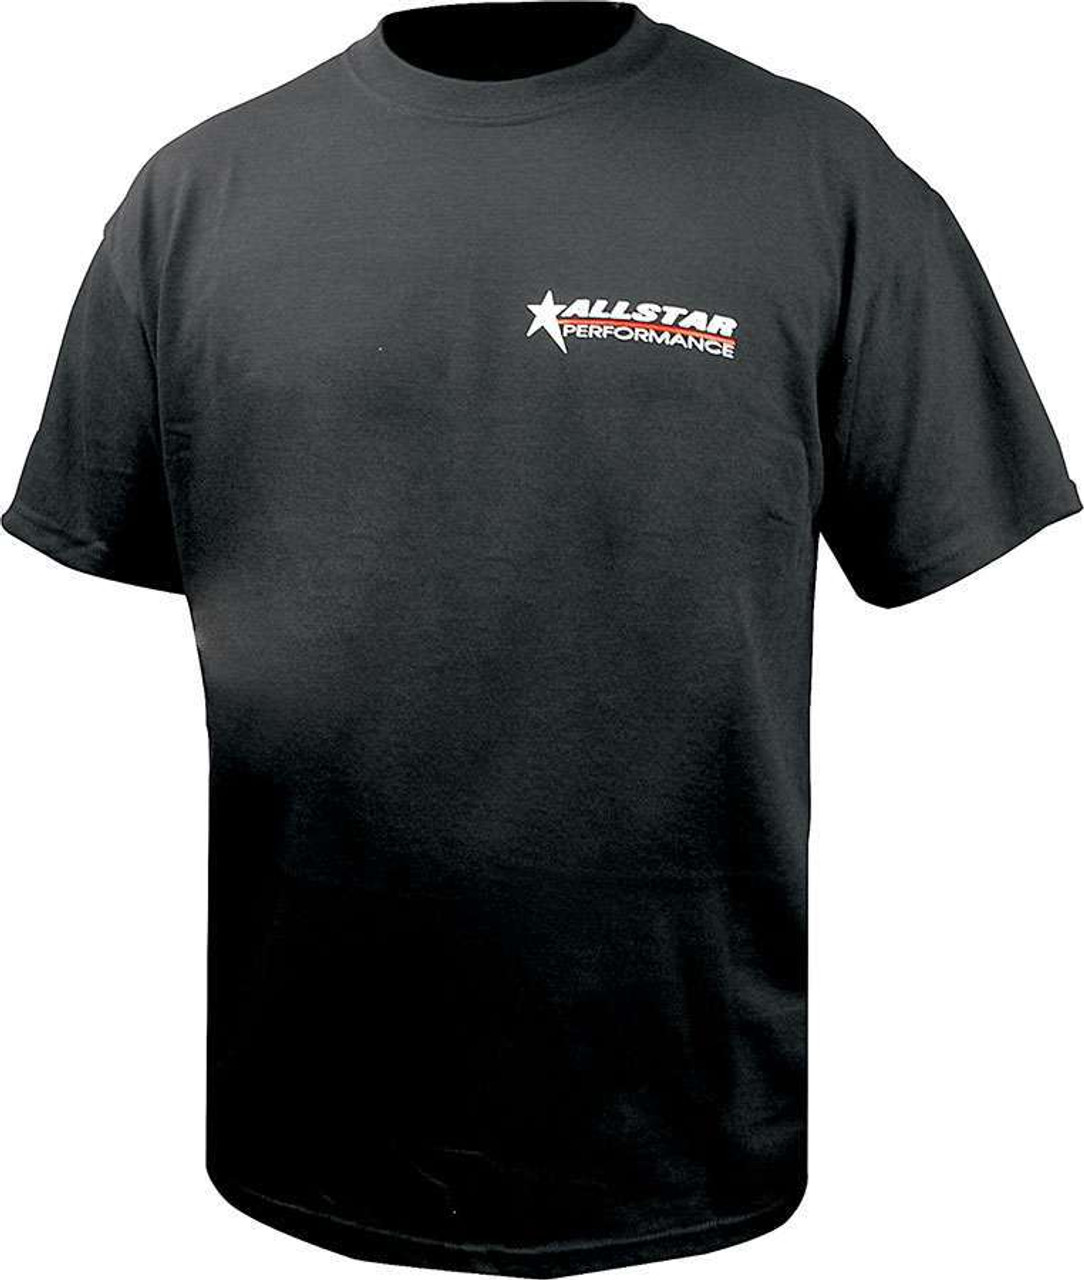 Allstar T-Shirt Black Small